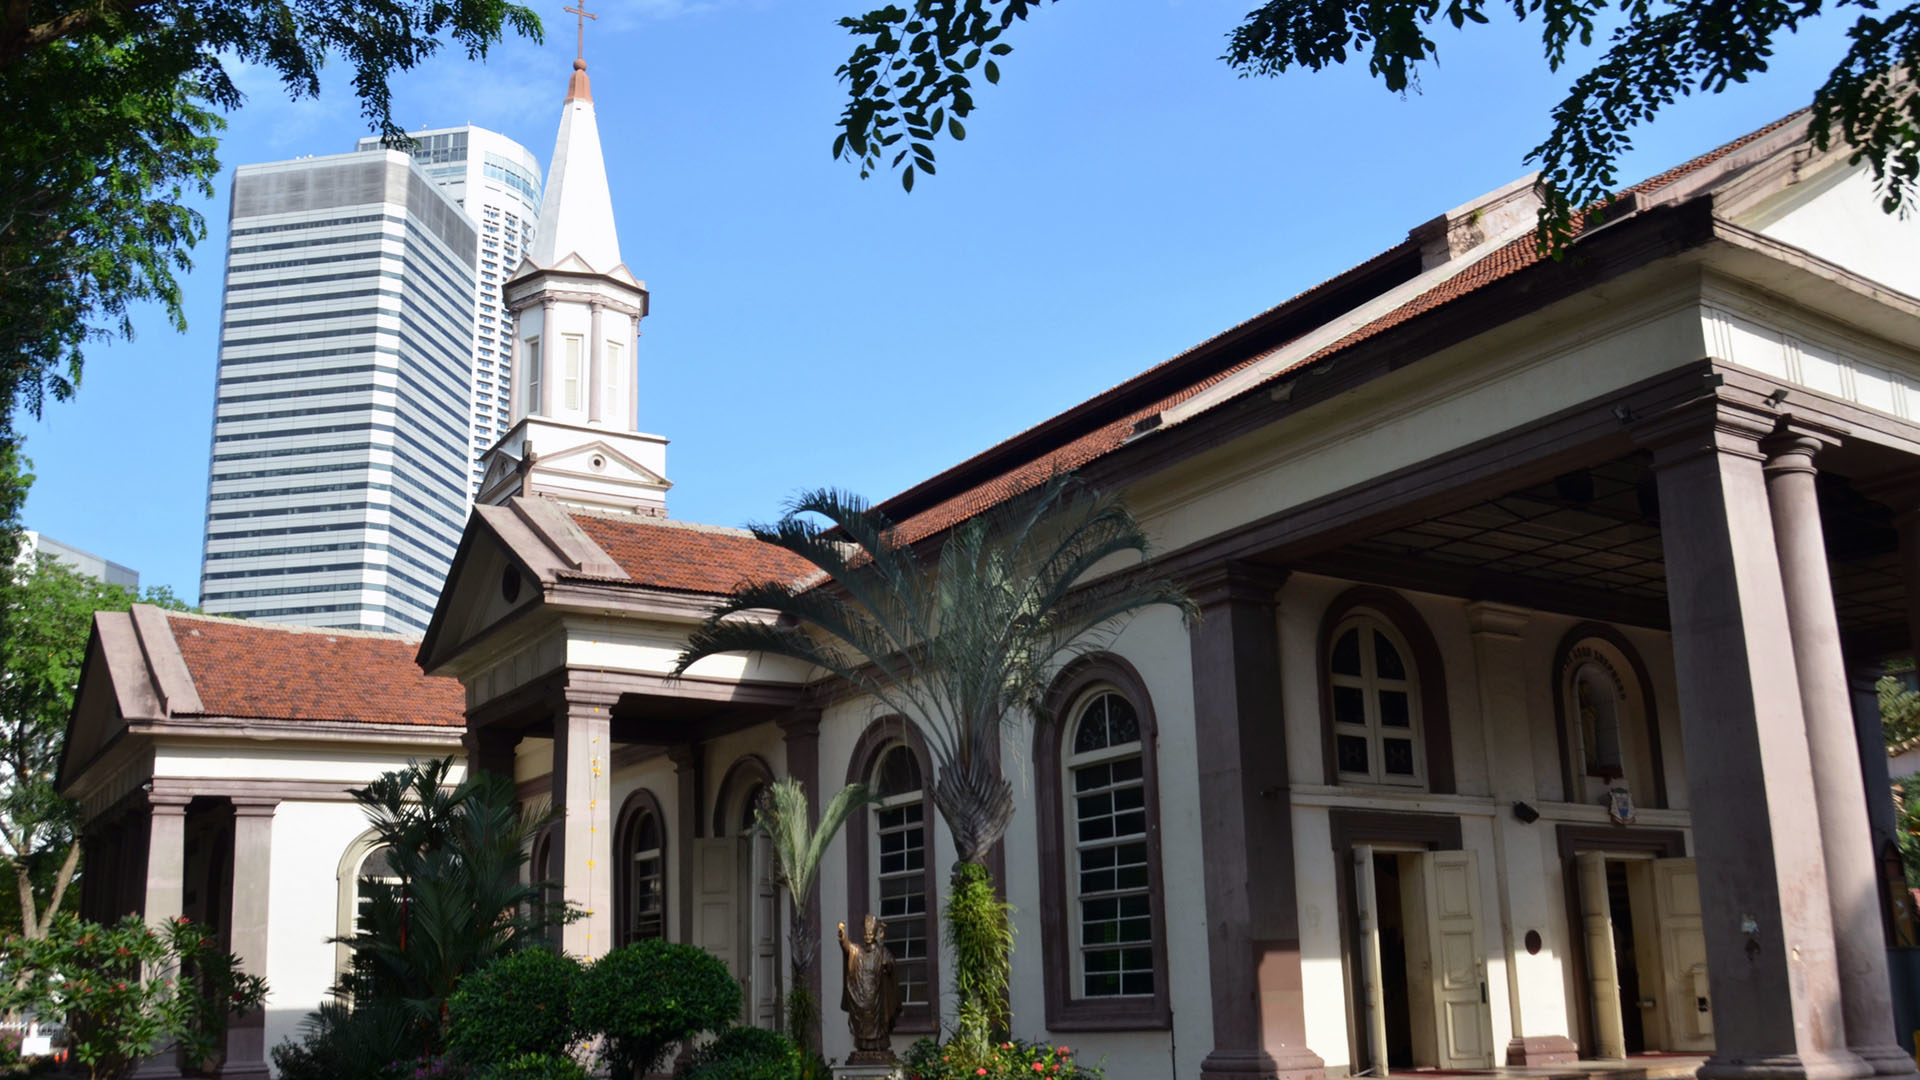 La cathédrale du Bon Pasteur de Singapour (1843) est la plus ancienne église catholique de la cité-Etat. (Photo: Flickr/Antoine 49/CC BY-NC-ND 2.0)